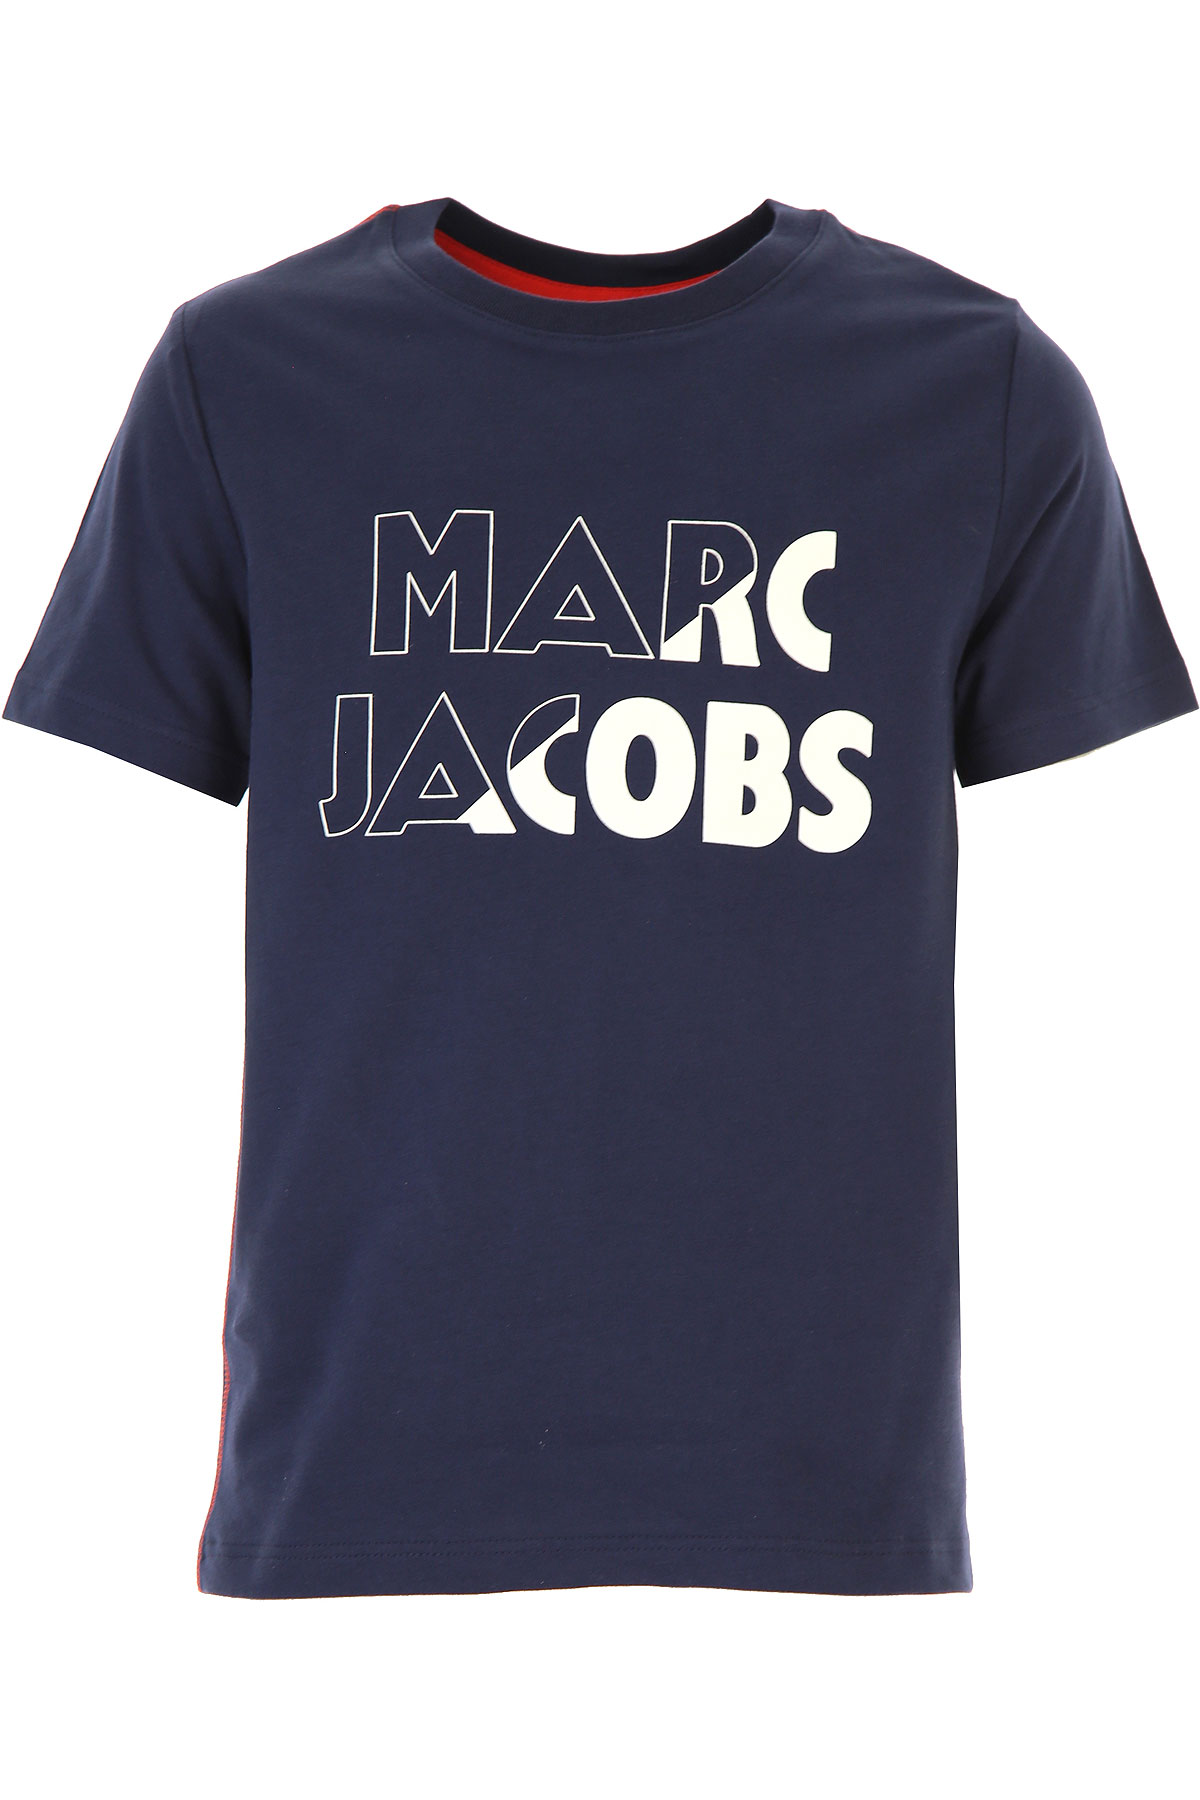 Marc Jacobs Kinder T-Shirt für Jungen Günstig im Sale, Blau, Baumwolle, 2017, 10Y 12Y 2Y 3Y 4Y 5Y 6Y 8Y